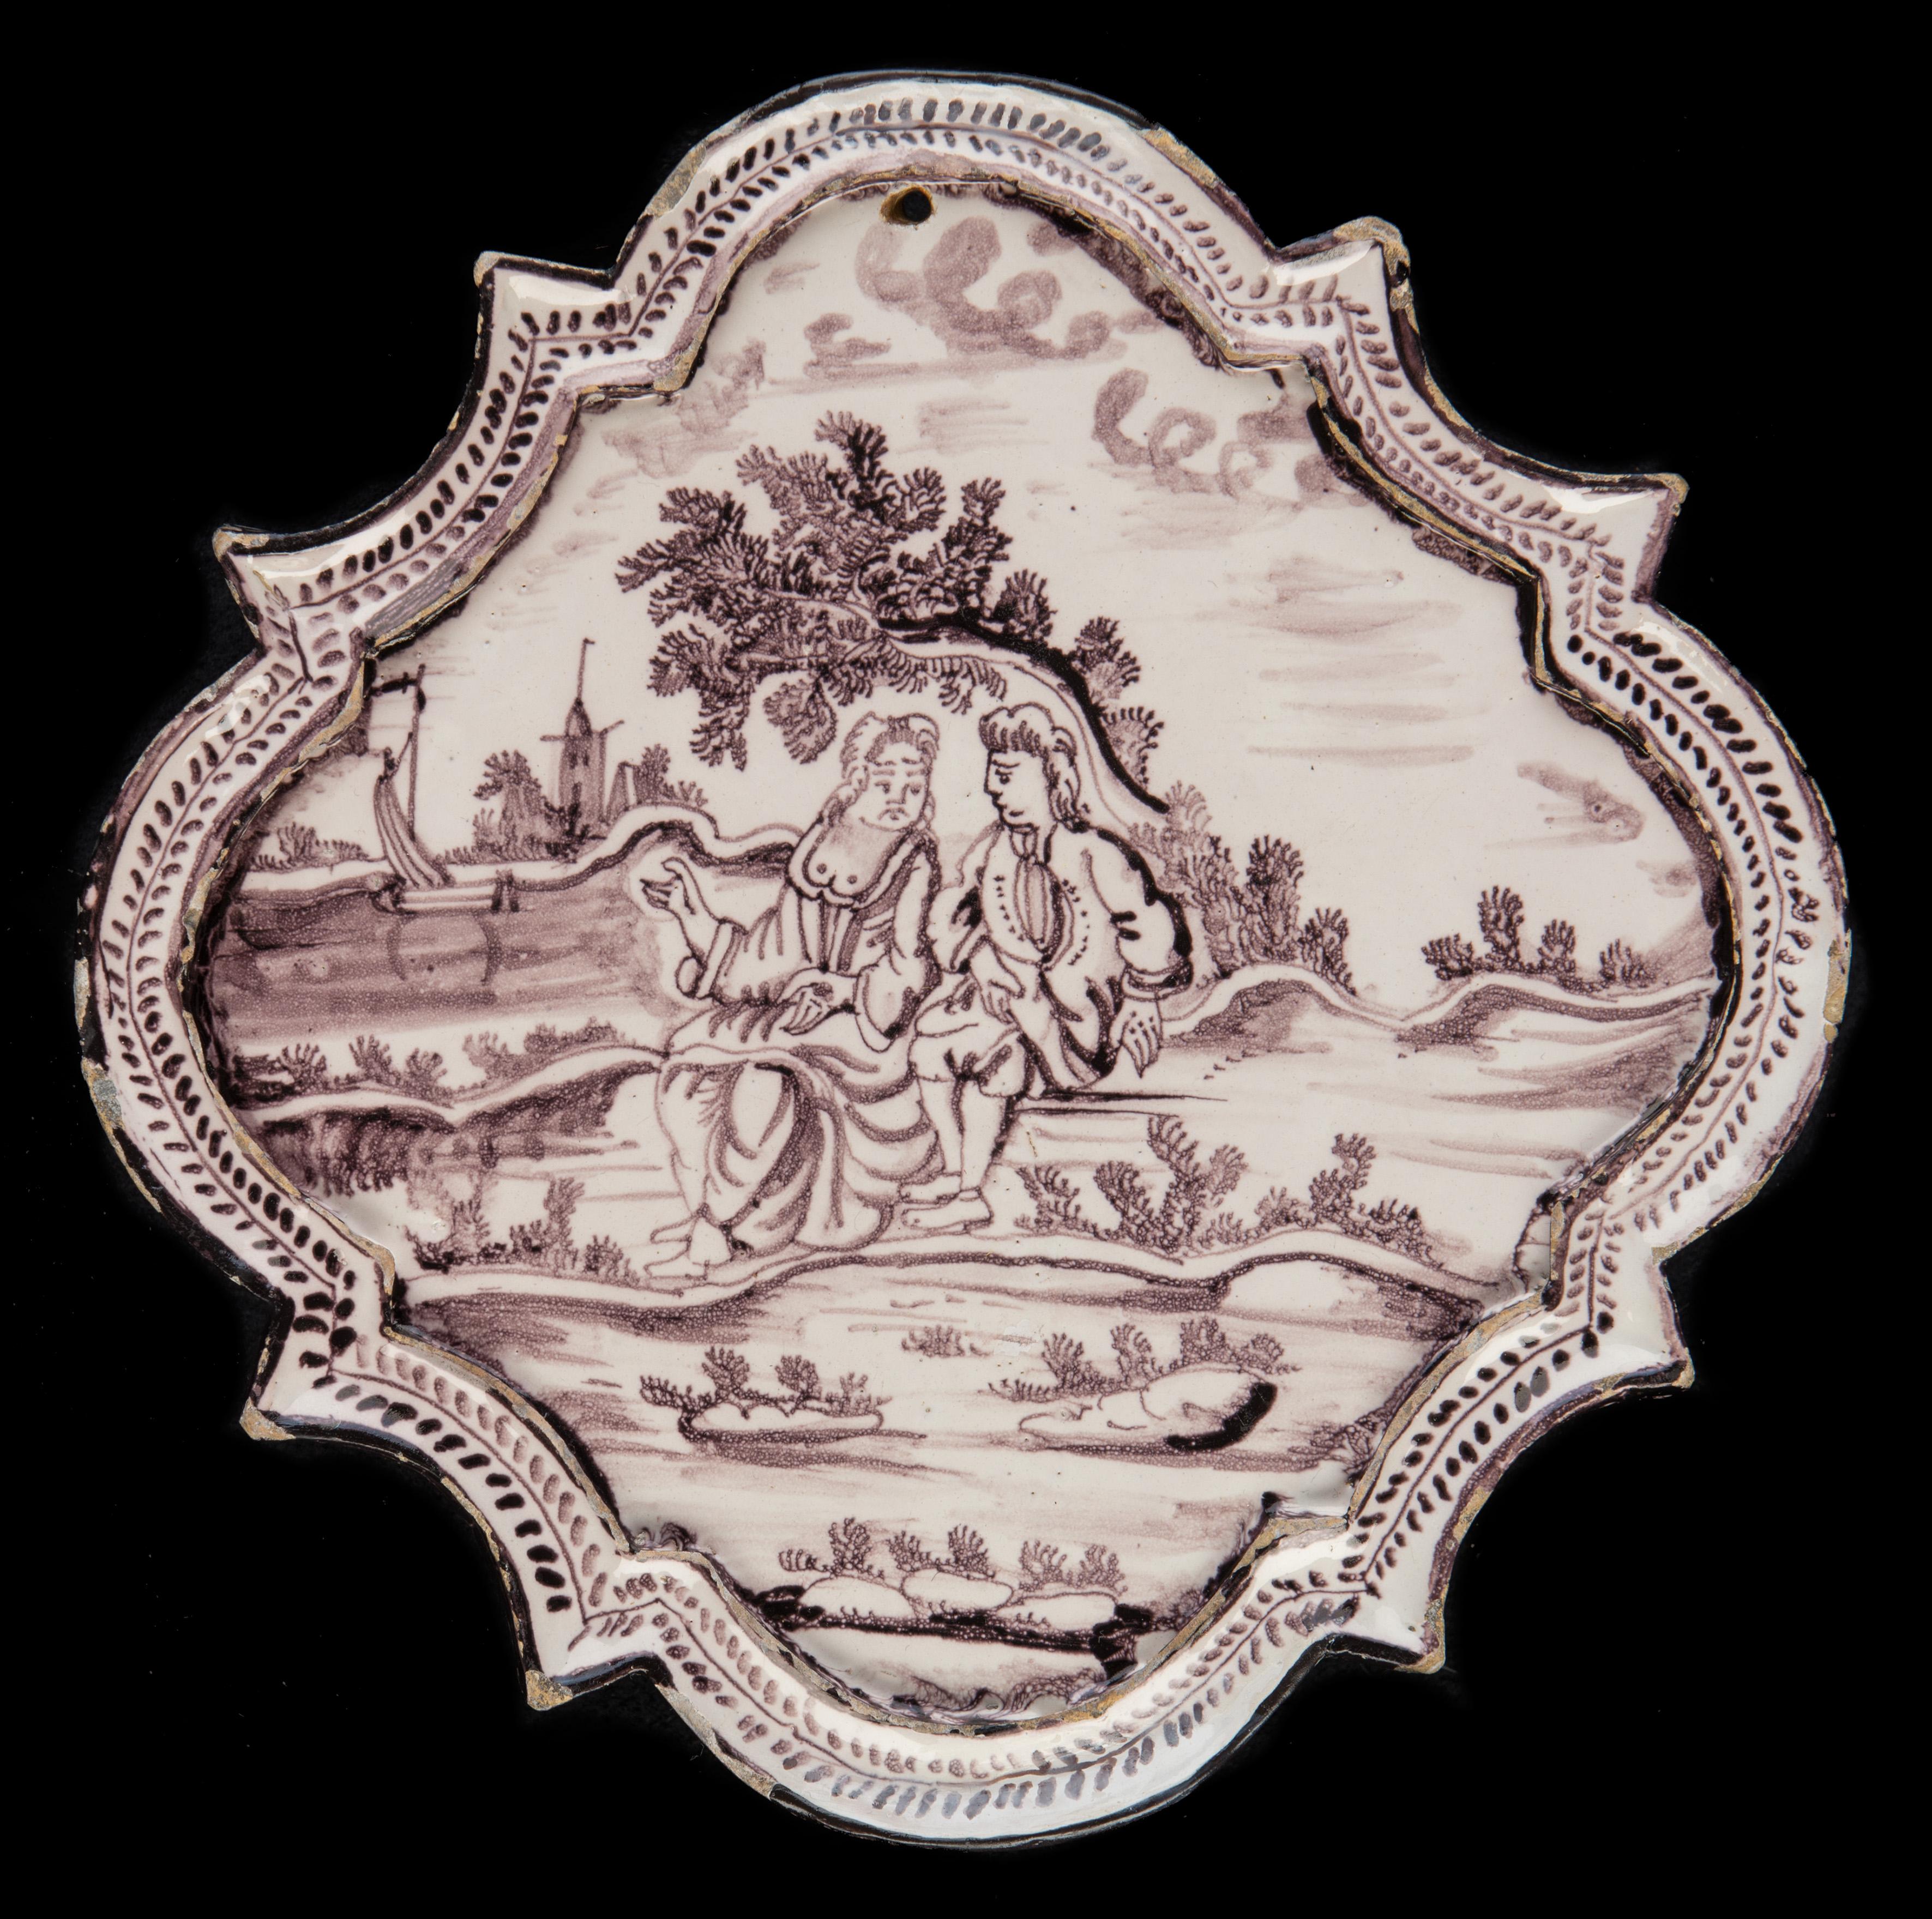 Plaque violette et blanche avec des personnages dans un paysage. Utrecht, vers 1760. Marque : Le J

Plaque losangée de couleur violette et blanche représentant un couple conversant dans un paysage. Au premier plan, un homme et une femme à la